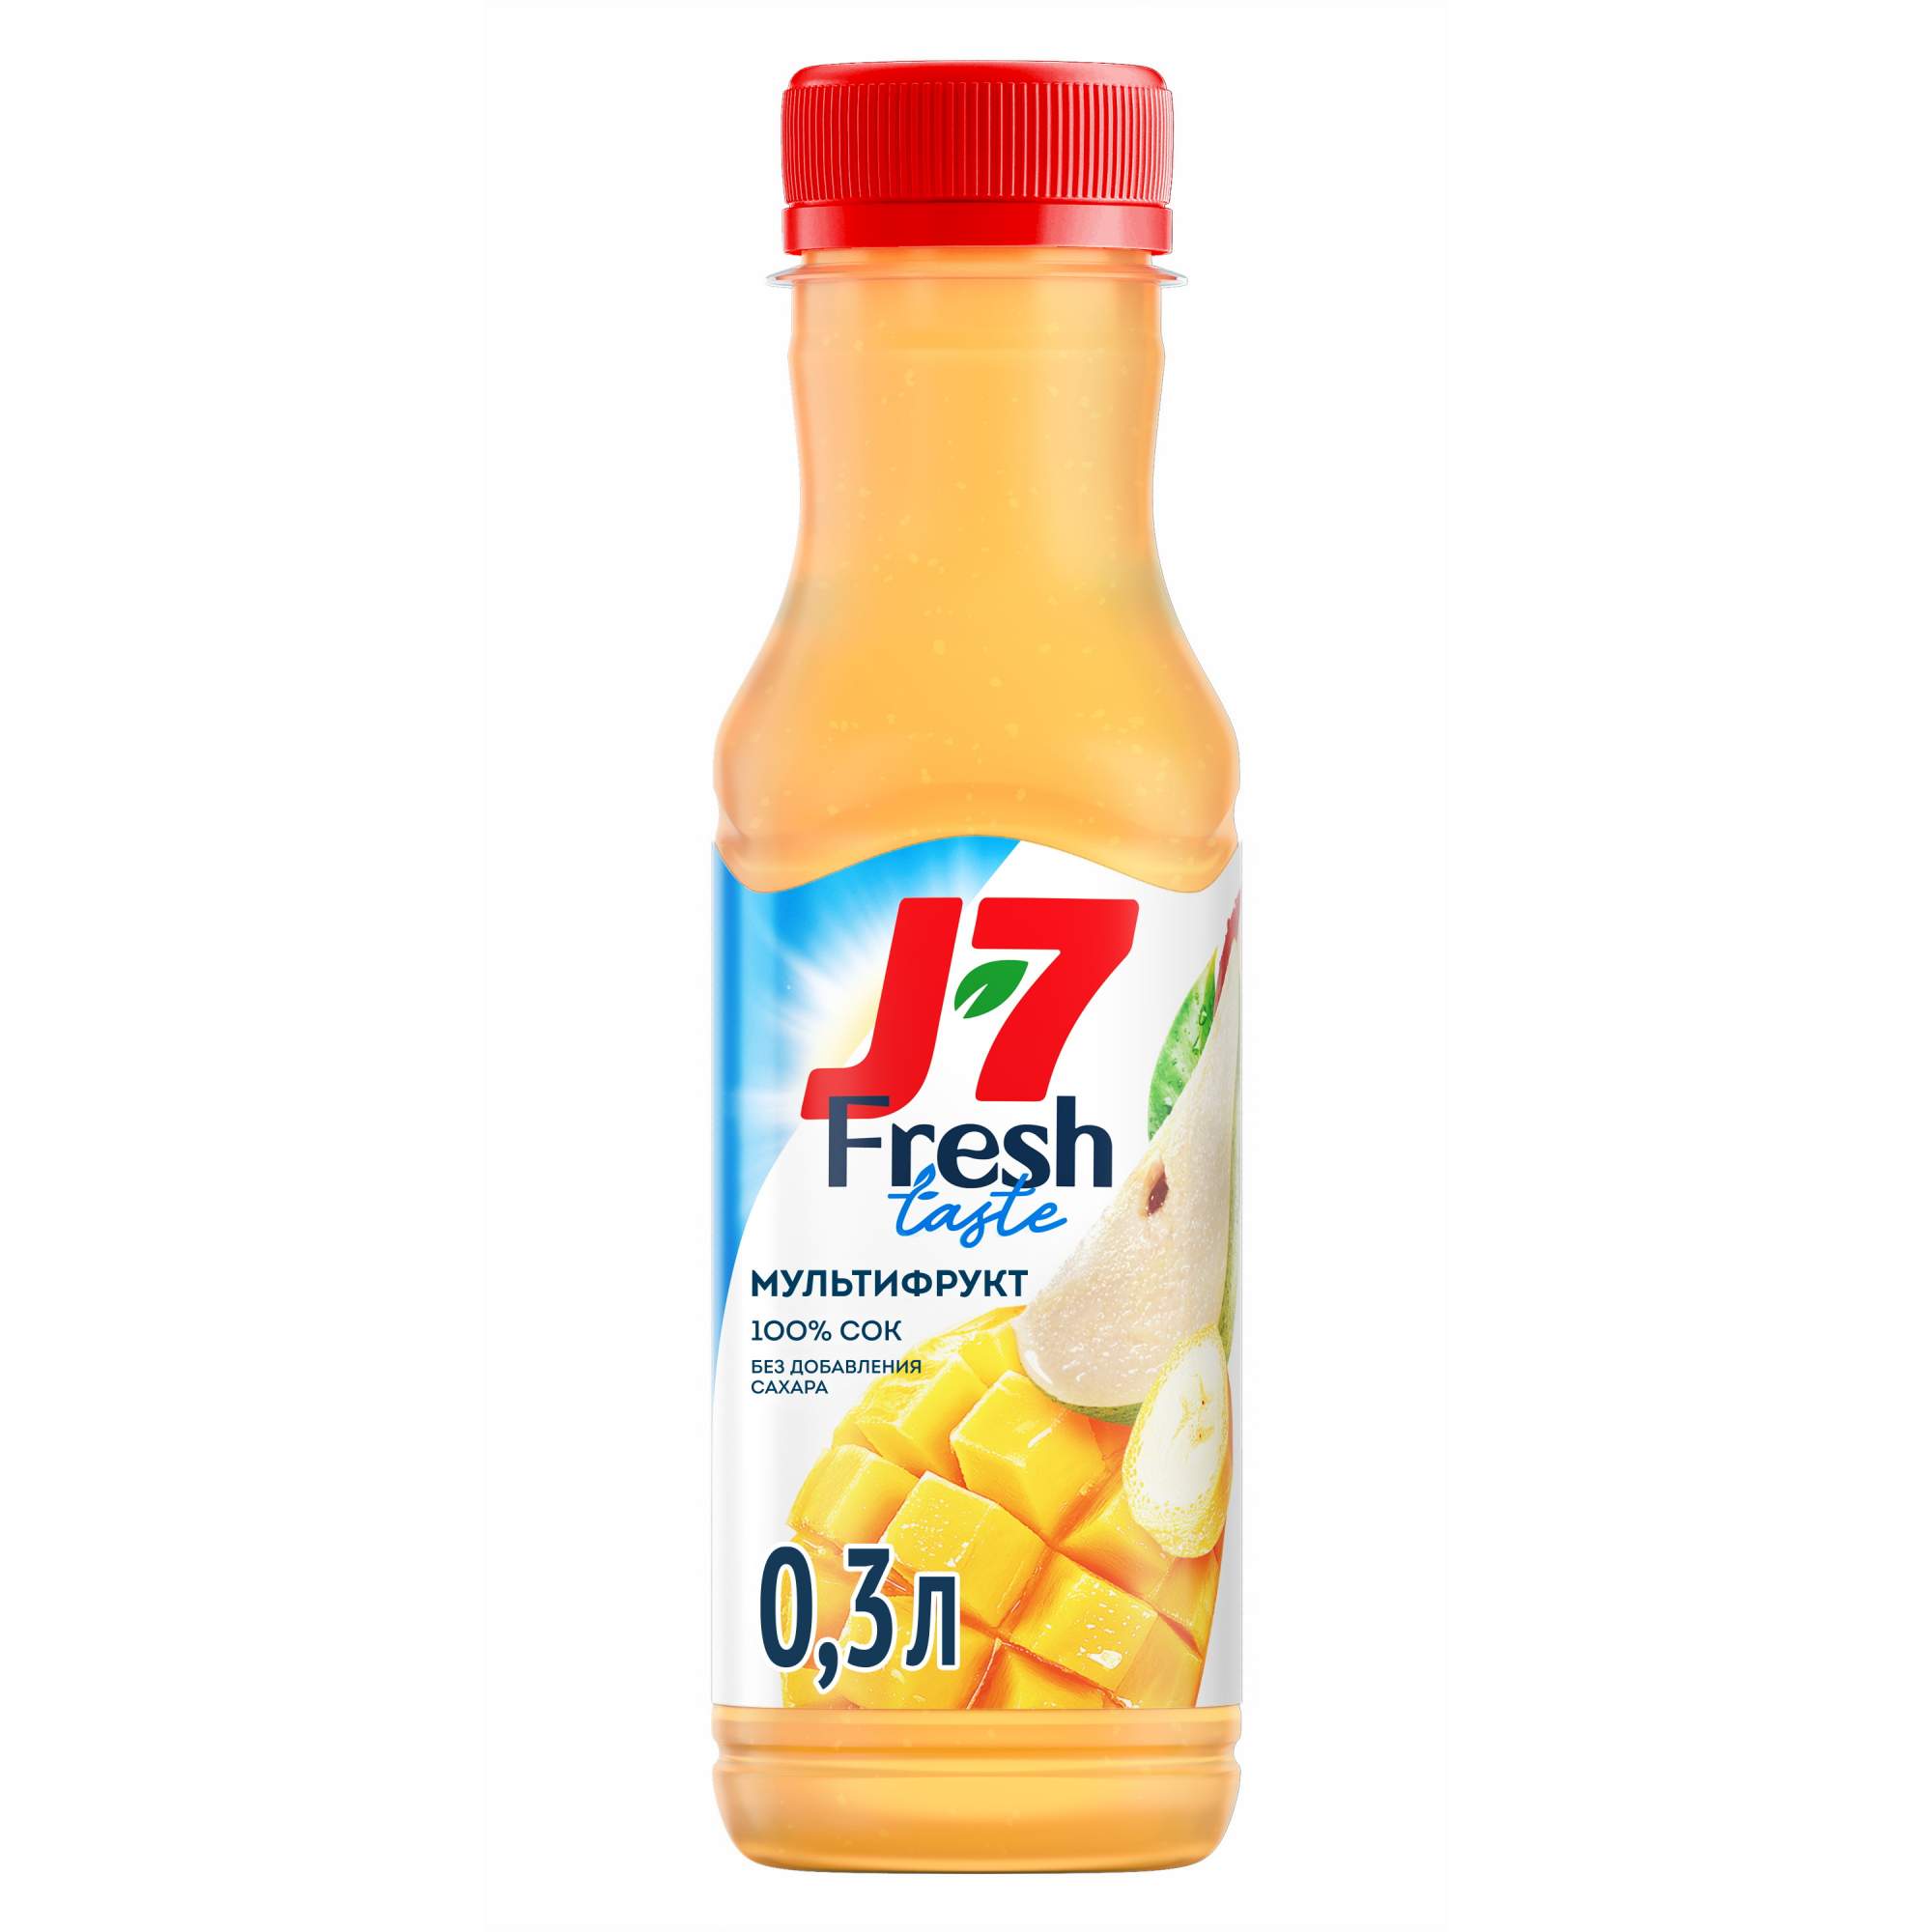 J7 fresh. J7 мультифрукт. Сок j7 мультифрукт. Сок j7 Fresh.